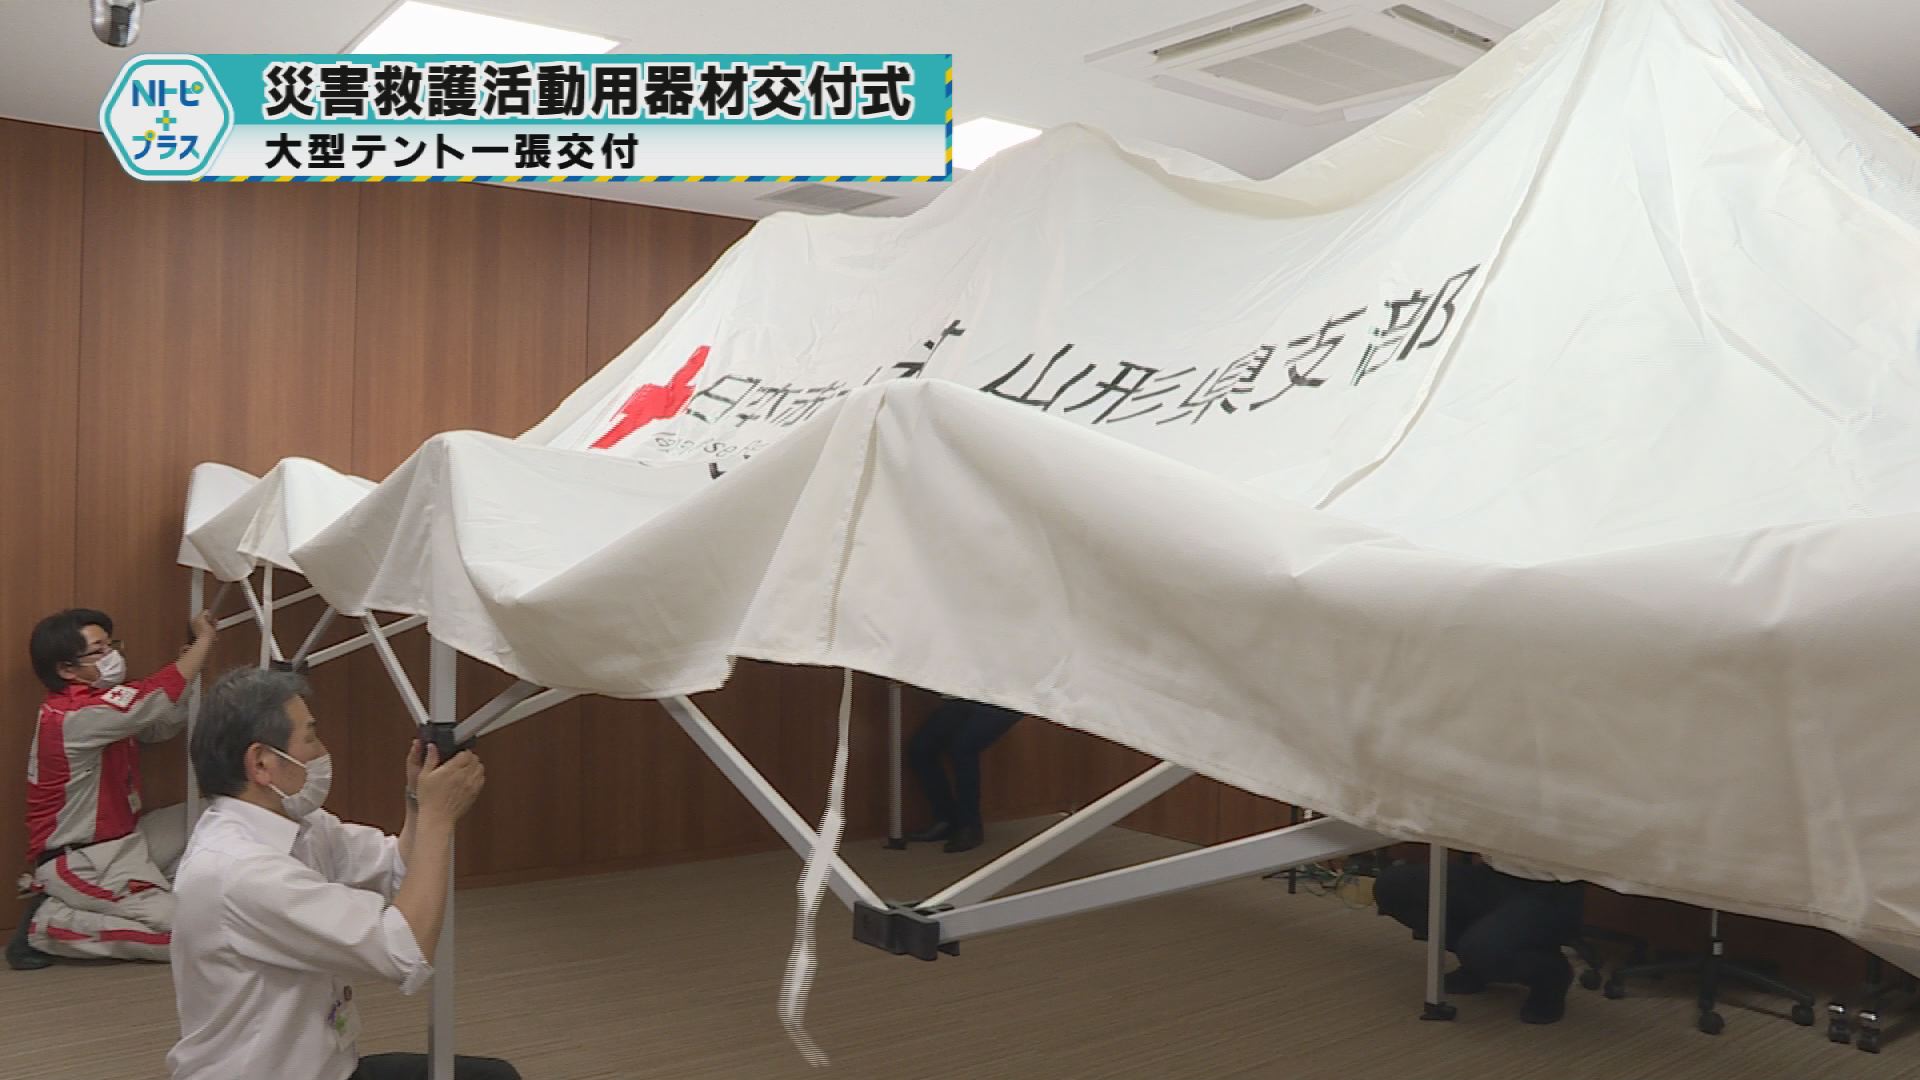 「災害救護活動用機材交付式」大型テント一張交付